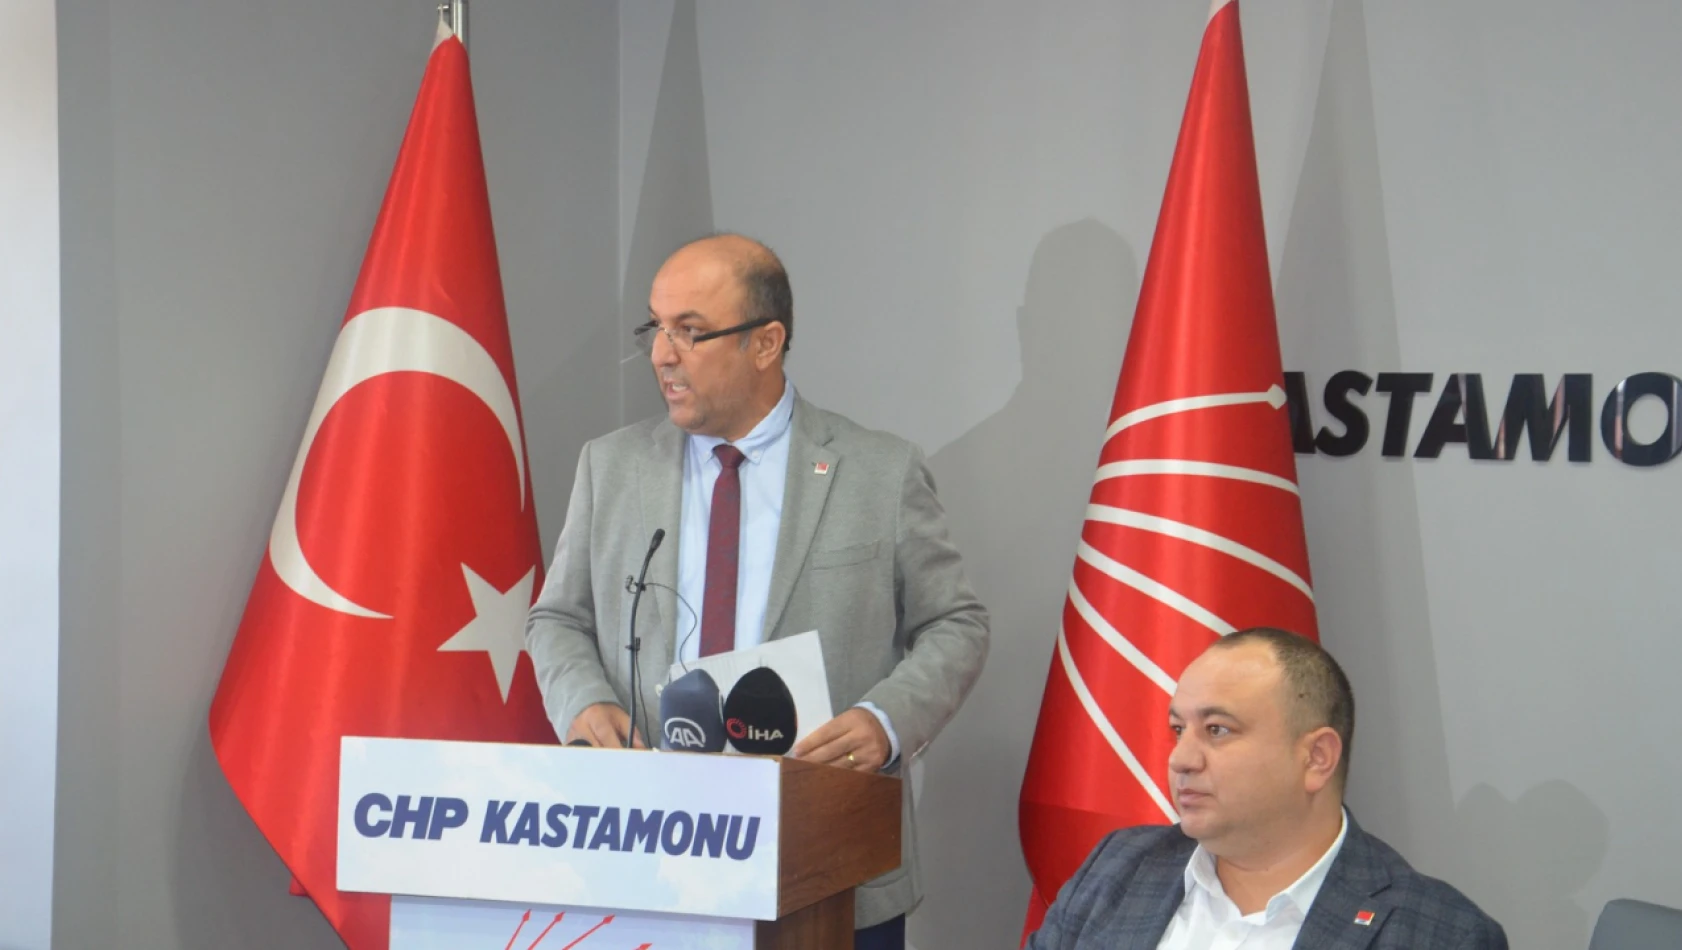 CHP'nin Kastamonu kongre tarihi belli oldu